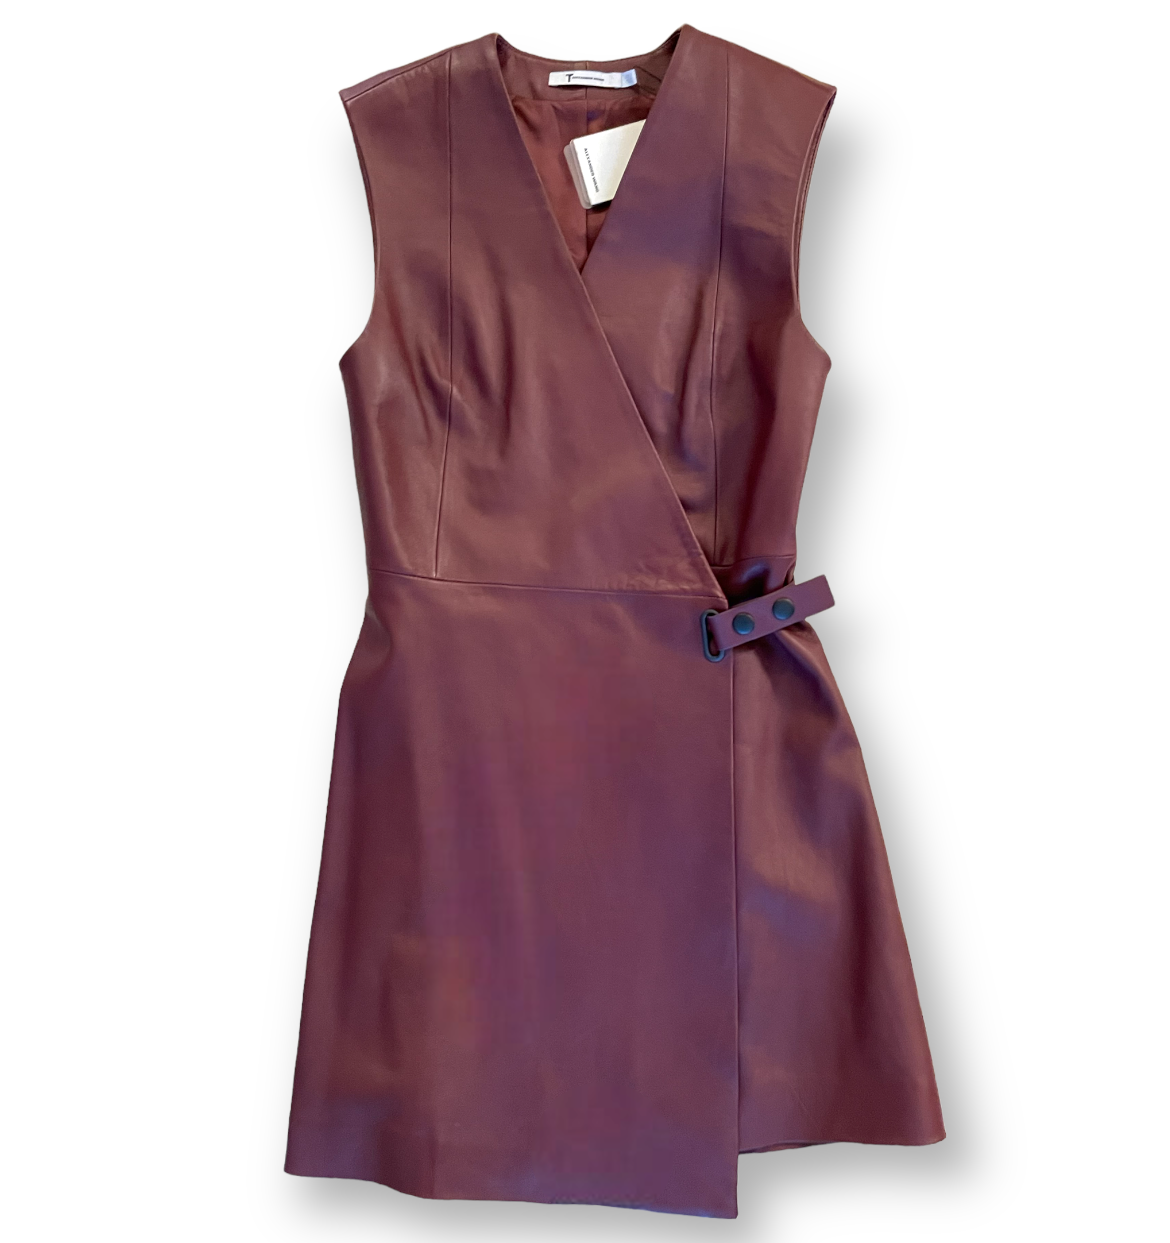 T by ALEXANDER WANG 100% Lambskin Leather Dress |Size:2|